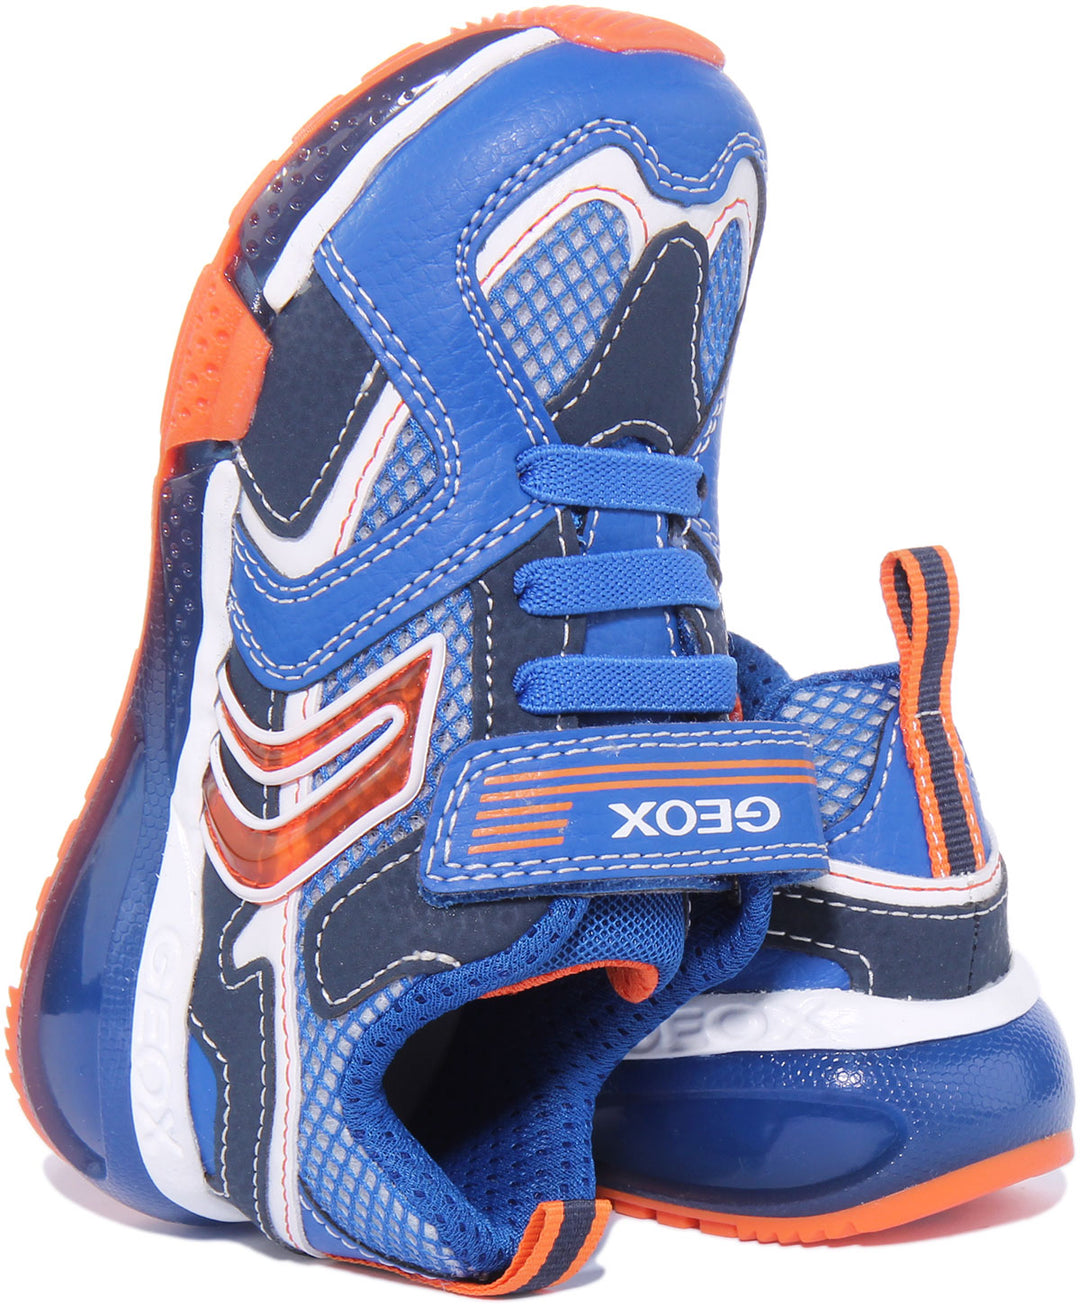 Geox J Bayonyc Zapatillas de malla sintética luminosas para niños en azul